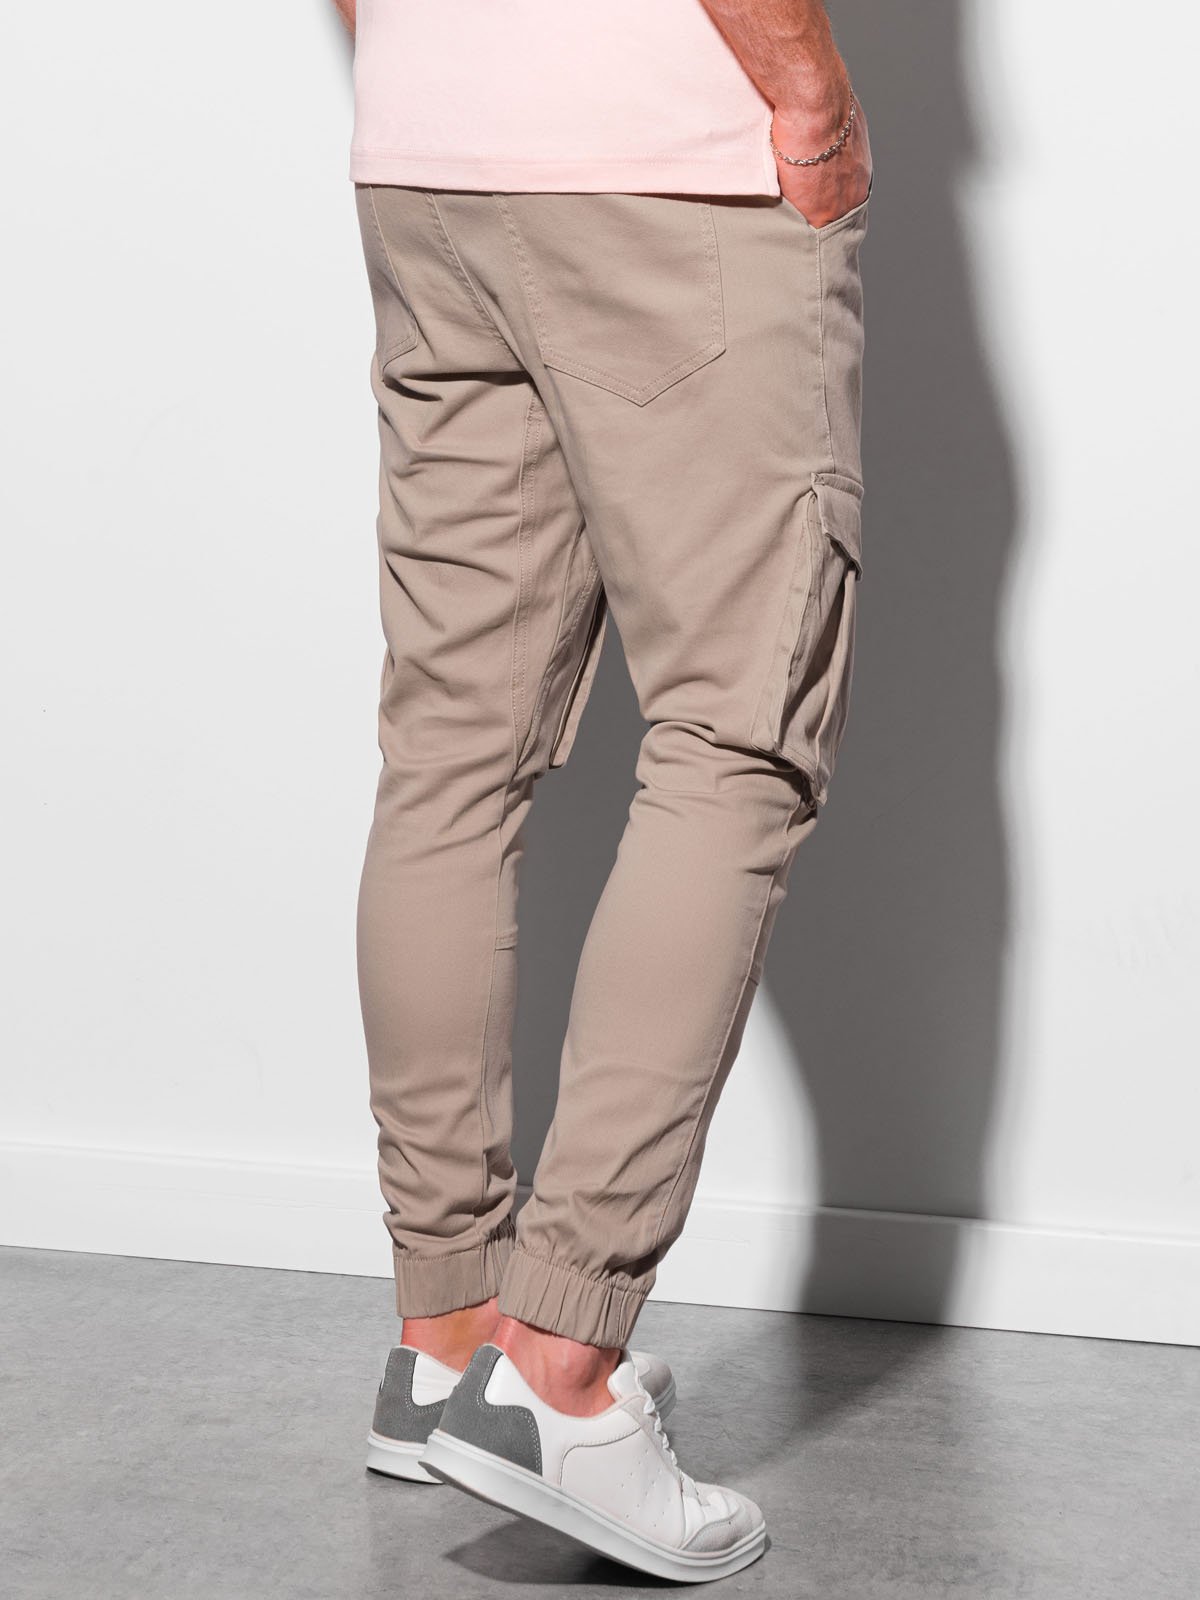 Men's pants joggers P886 - beige | MODONE wholesale - Clothing For Men